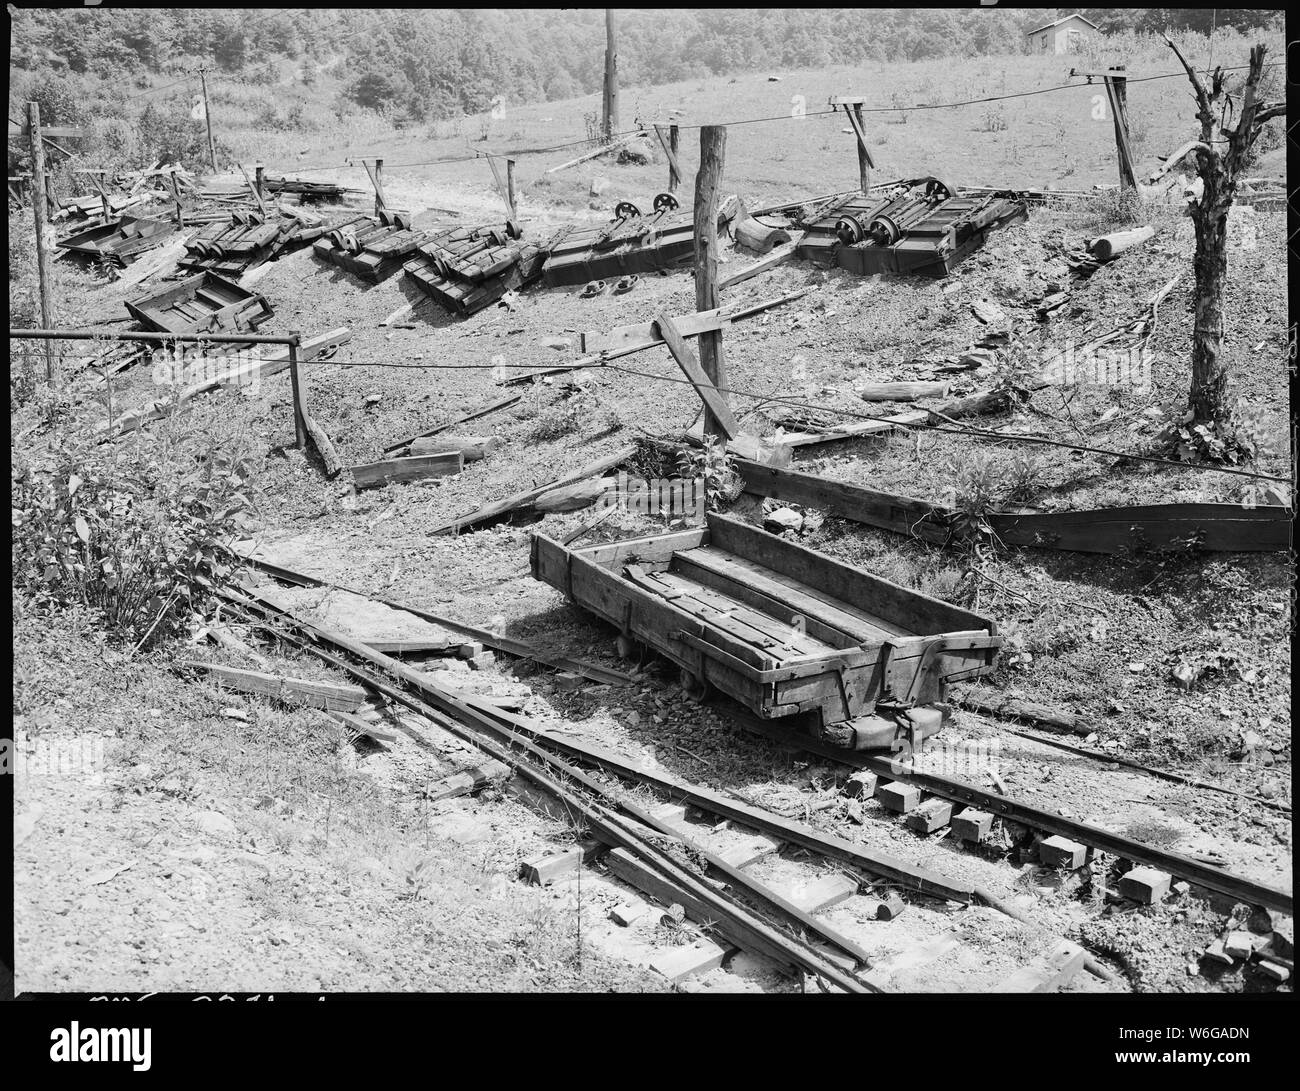 Autour de débris de verre abandonnée mine qui a explosé en décembre dernier. Kentucky Straight Creek Coal Company, mine de Belva, abandonnés après l'explosion [EN] 31/12/1945, quatre mille, Bell County (Kentucky). Banque D'Images